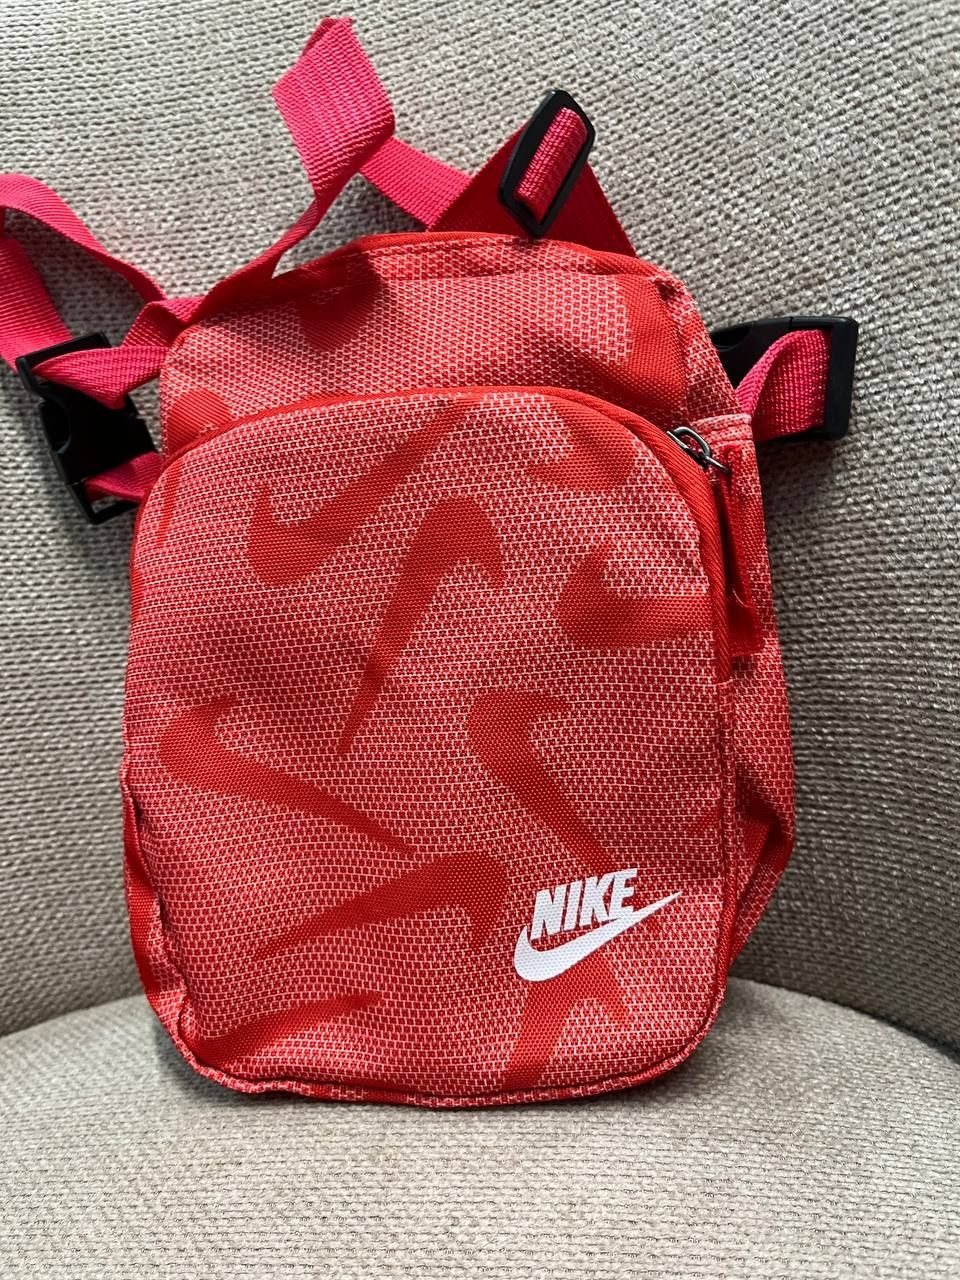 Берсетка Nike / сумка Nike в різних кольорах